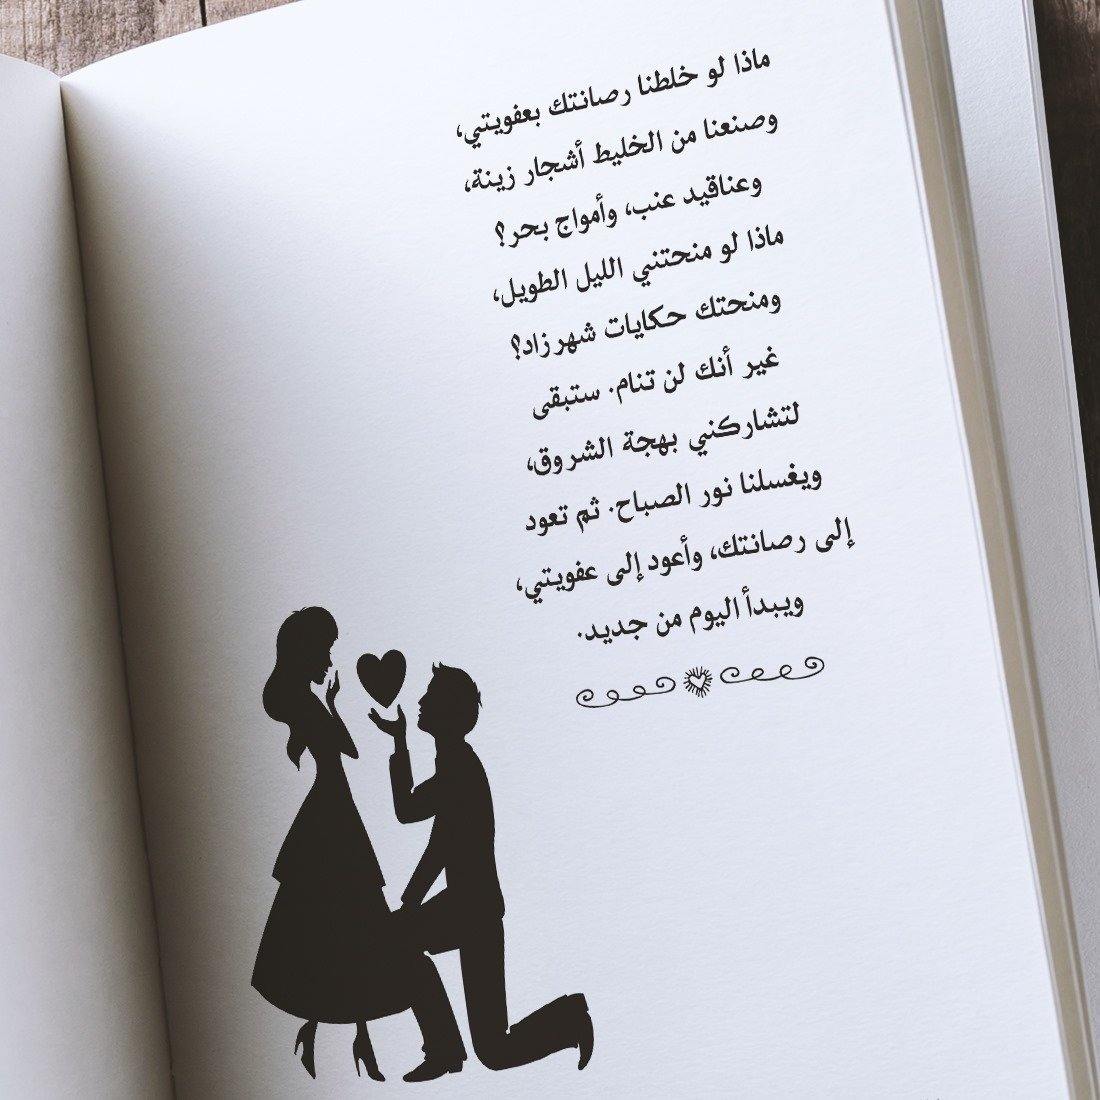 154 طريقة لقول أفتقدك كتب الأدب العربي شيرين سامي